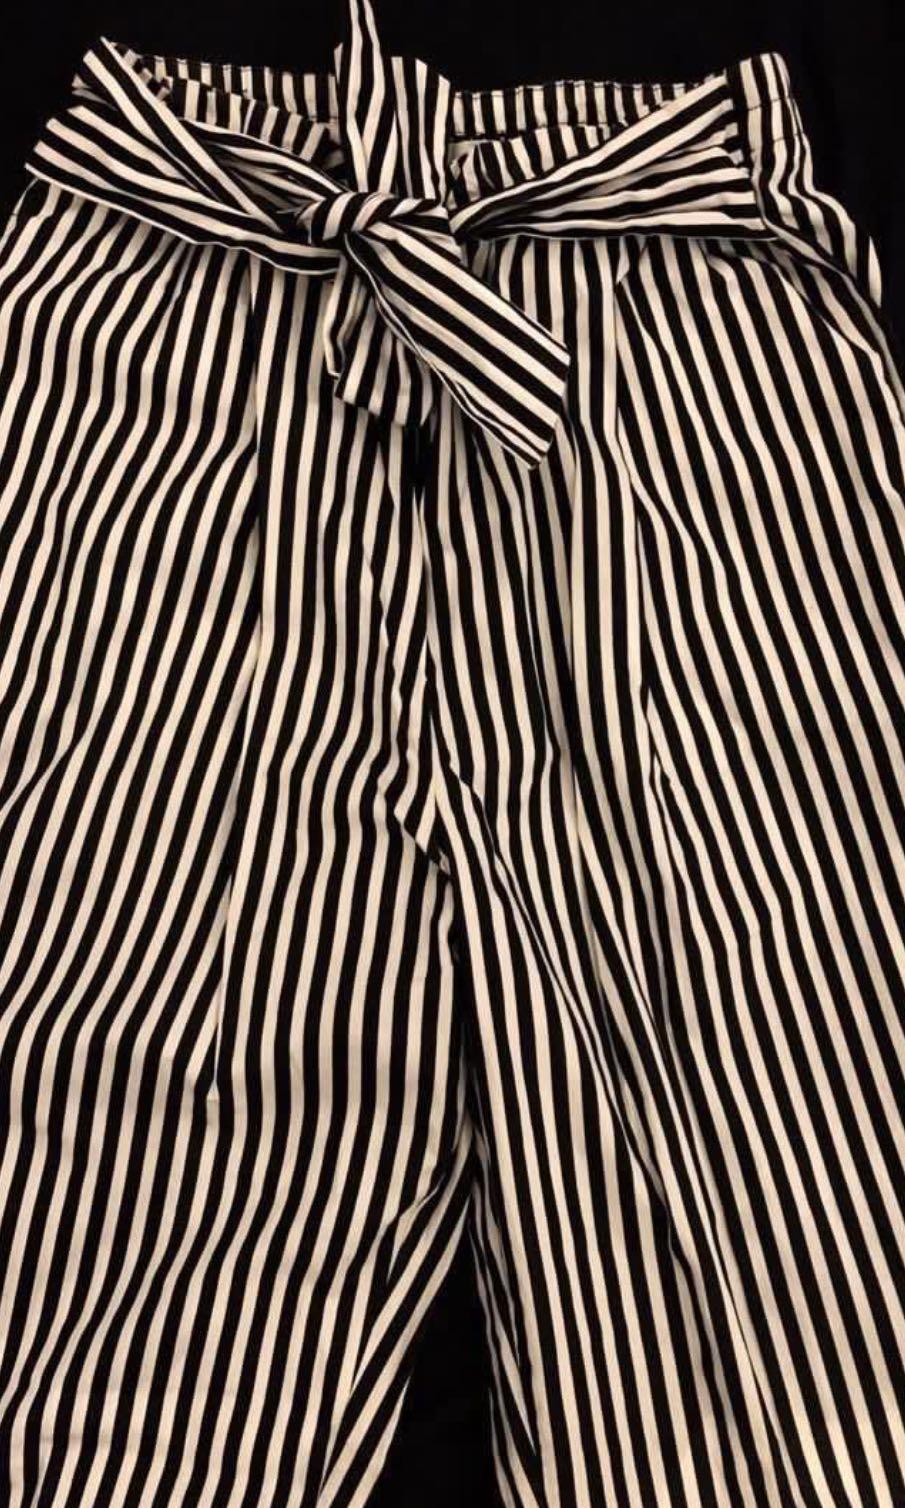 zara striped trousers women's